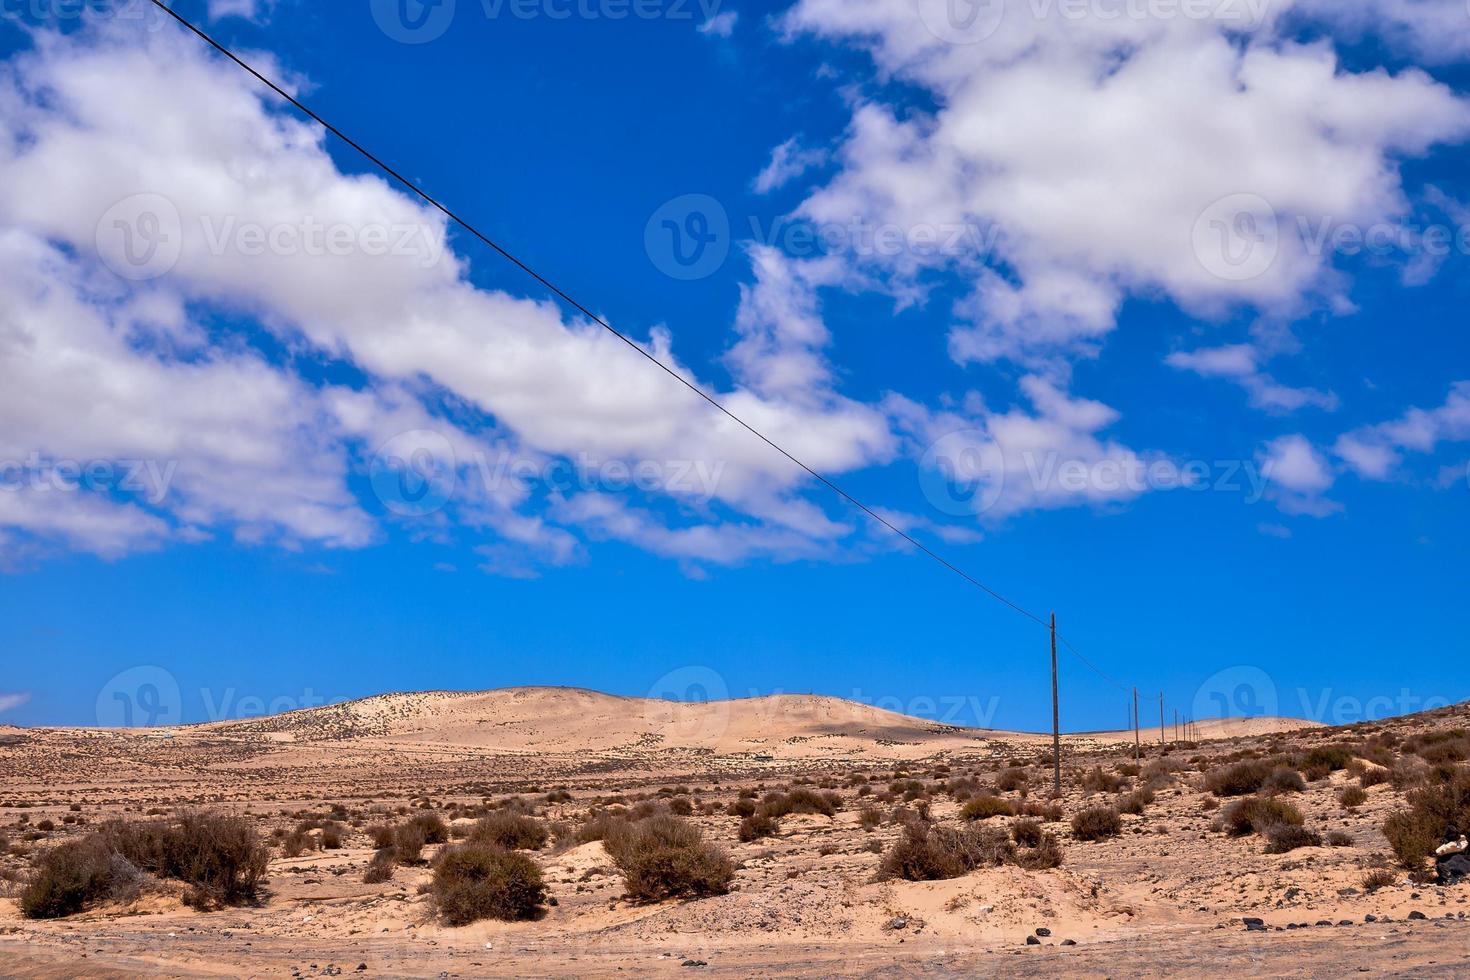 paisagem cênica do deserto foto